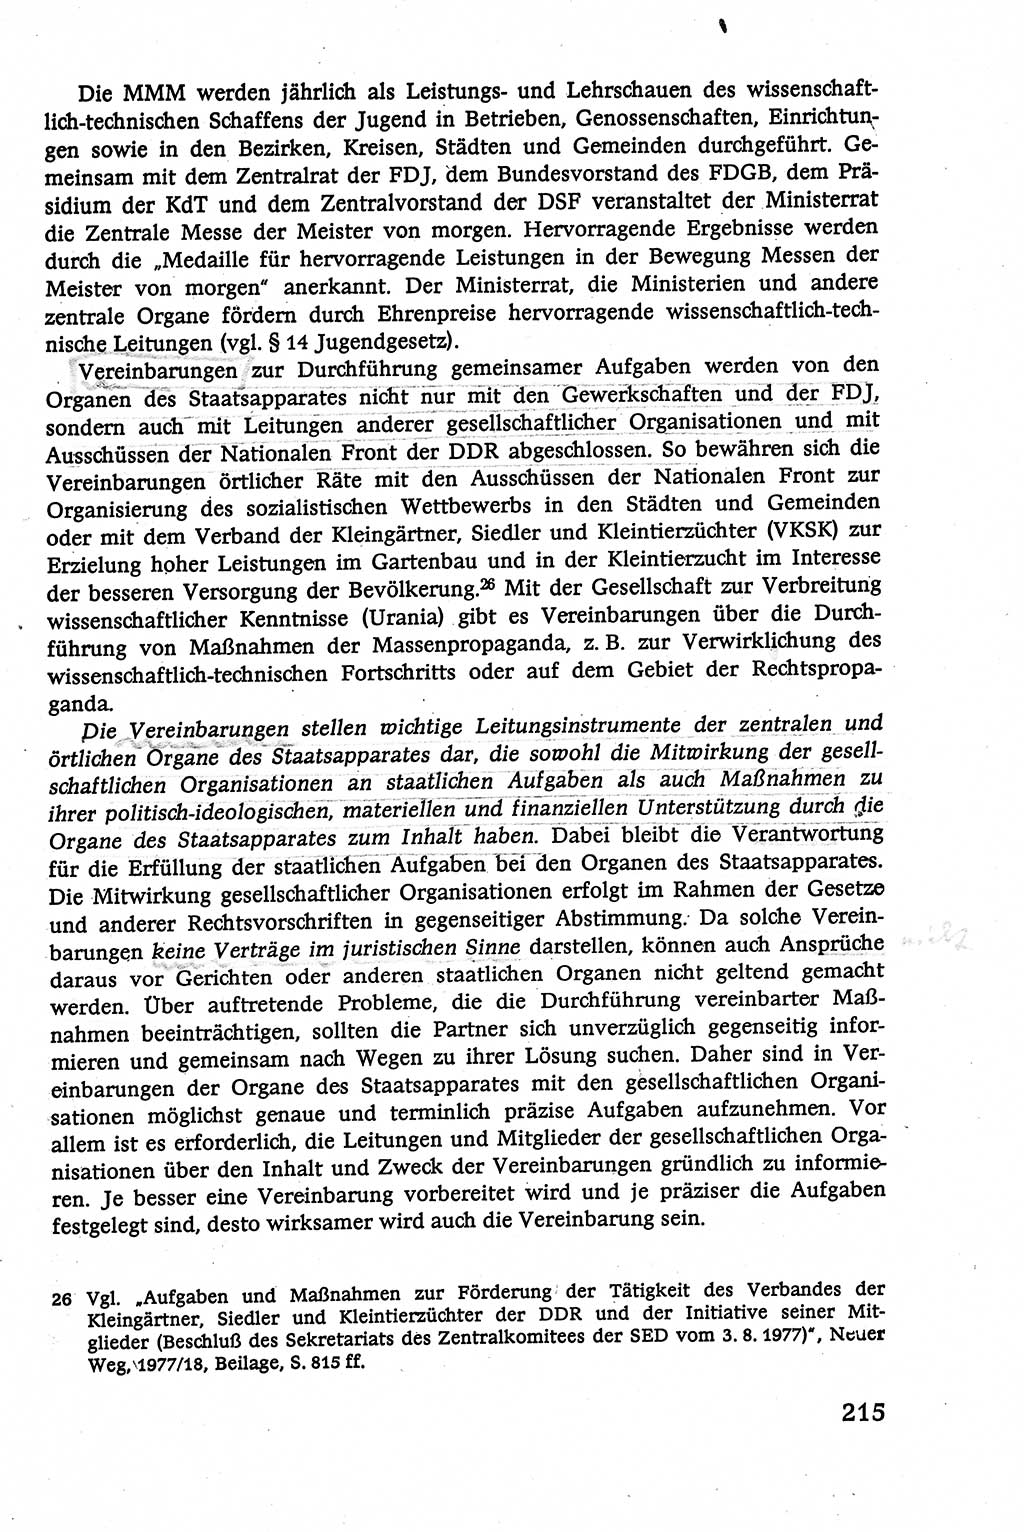 Verwaltungsrecht [Deutsche Demokratische Republik (DDR)], Lehrbuch 1979, Seite 215 (Verw.-R. DDR Lb. 1979, S. 215)